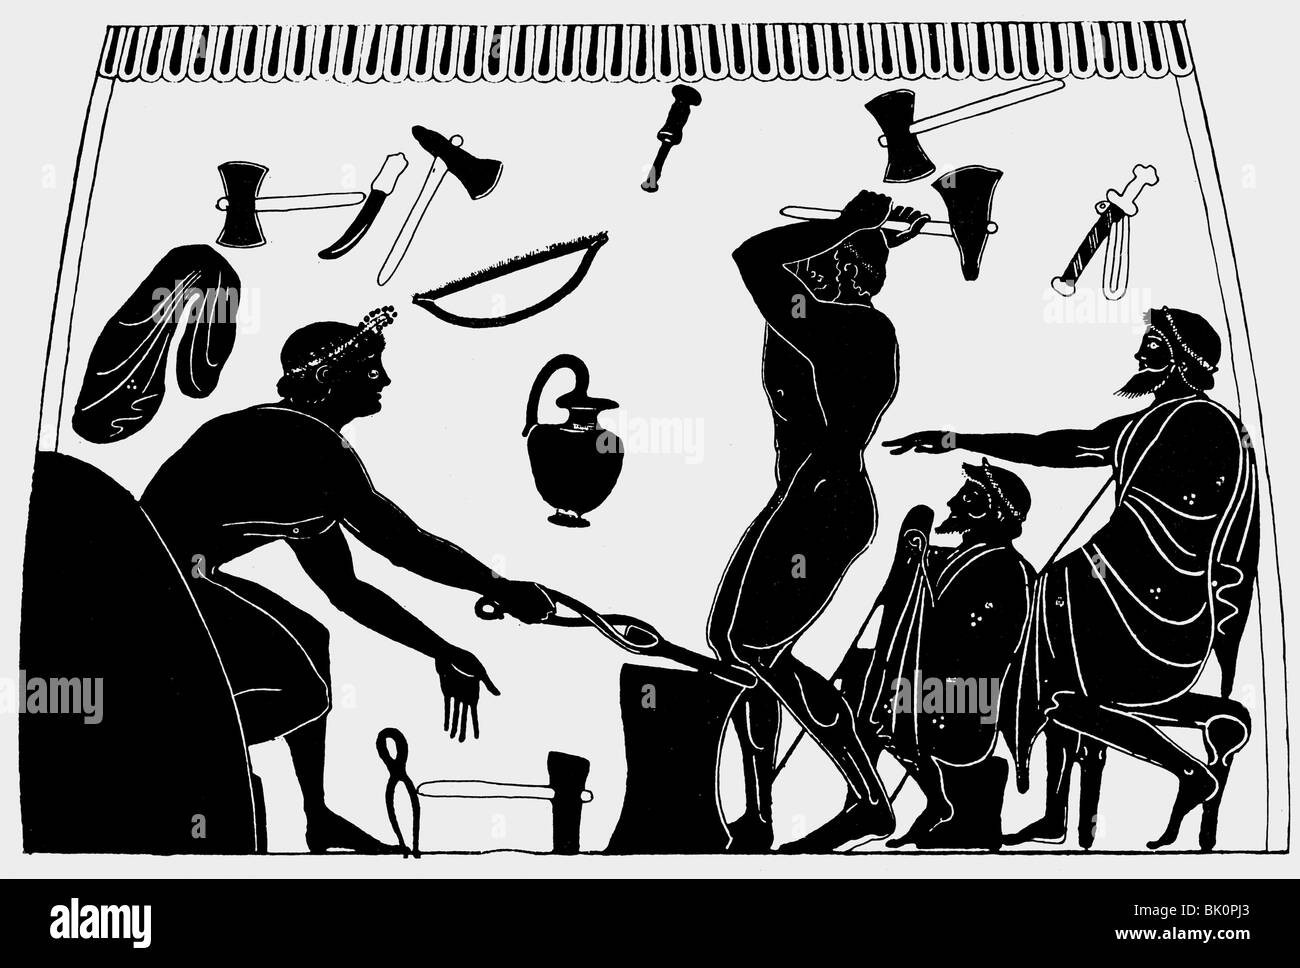 Personnes, professions, forgeron, dessin d'après la vase Grec, vers 5e siècle avant J.-C., Smith, artisan, artisanat, boutique, tool, outils Banque D'Images